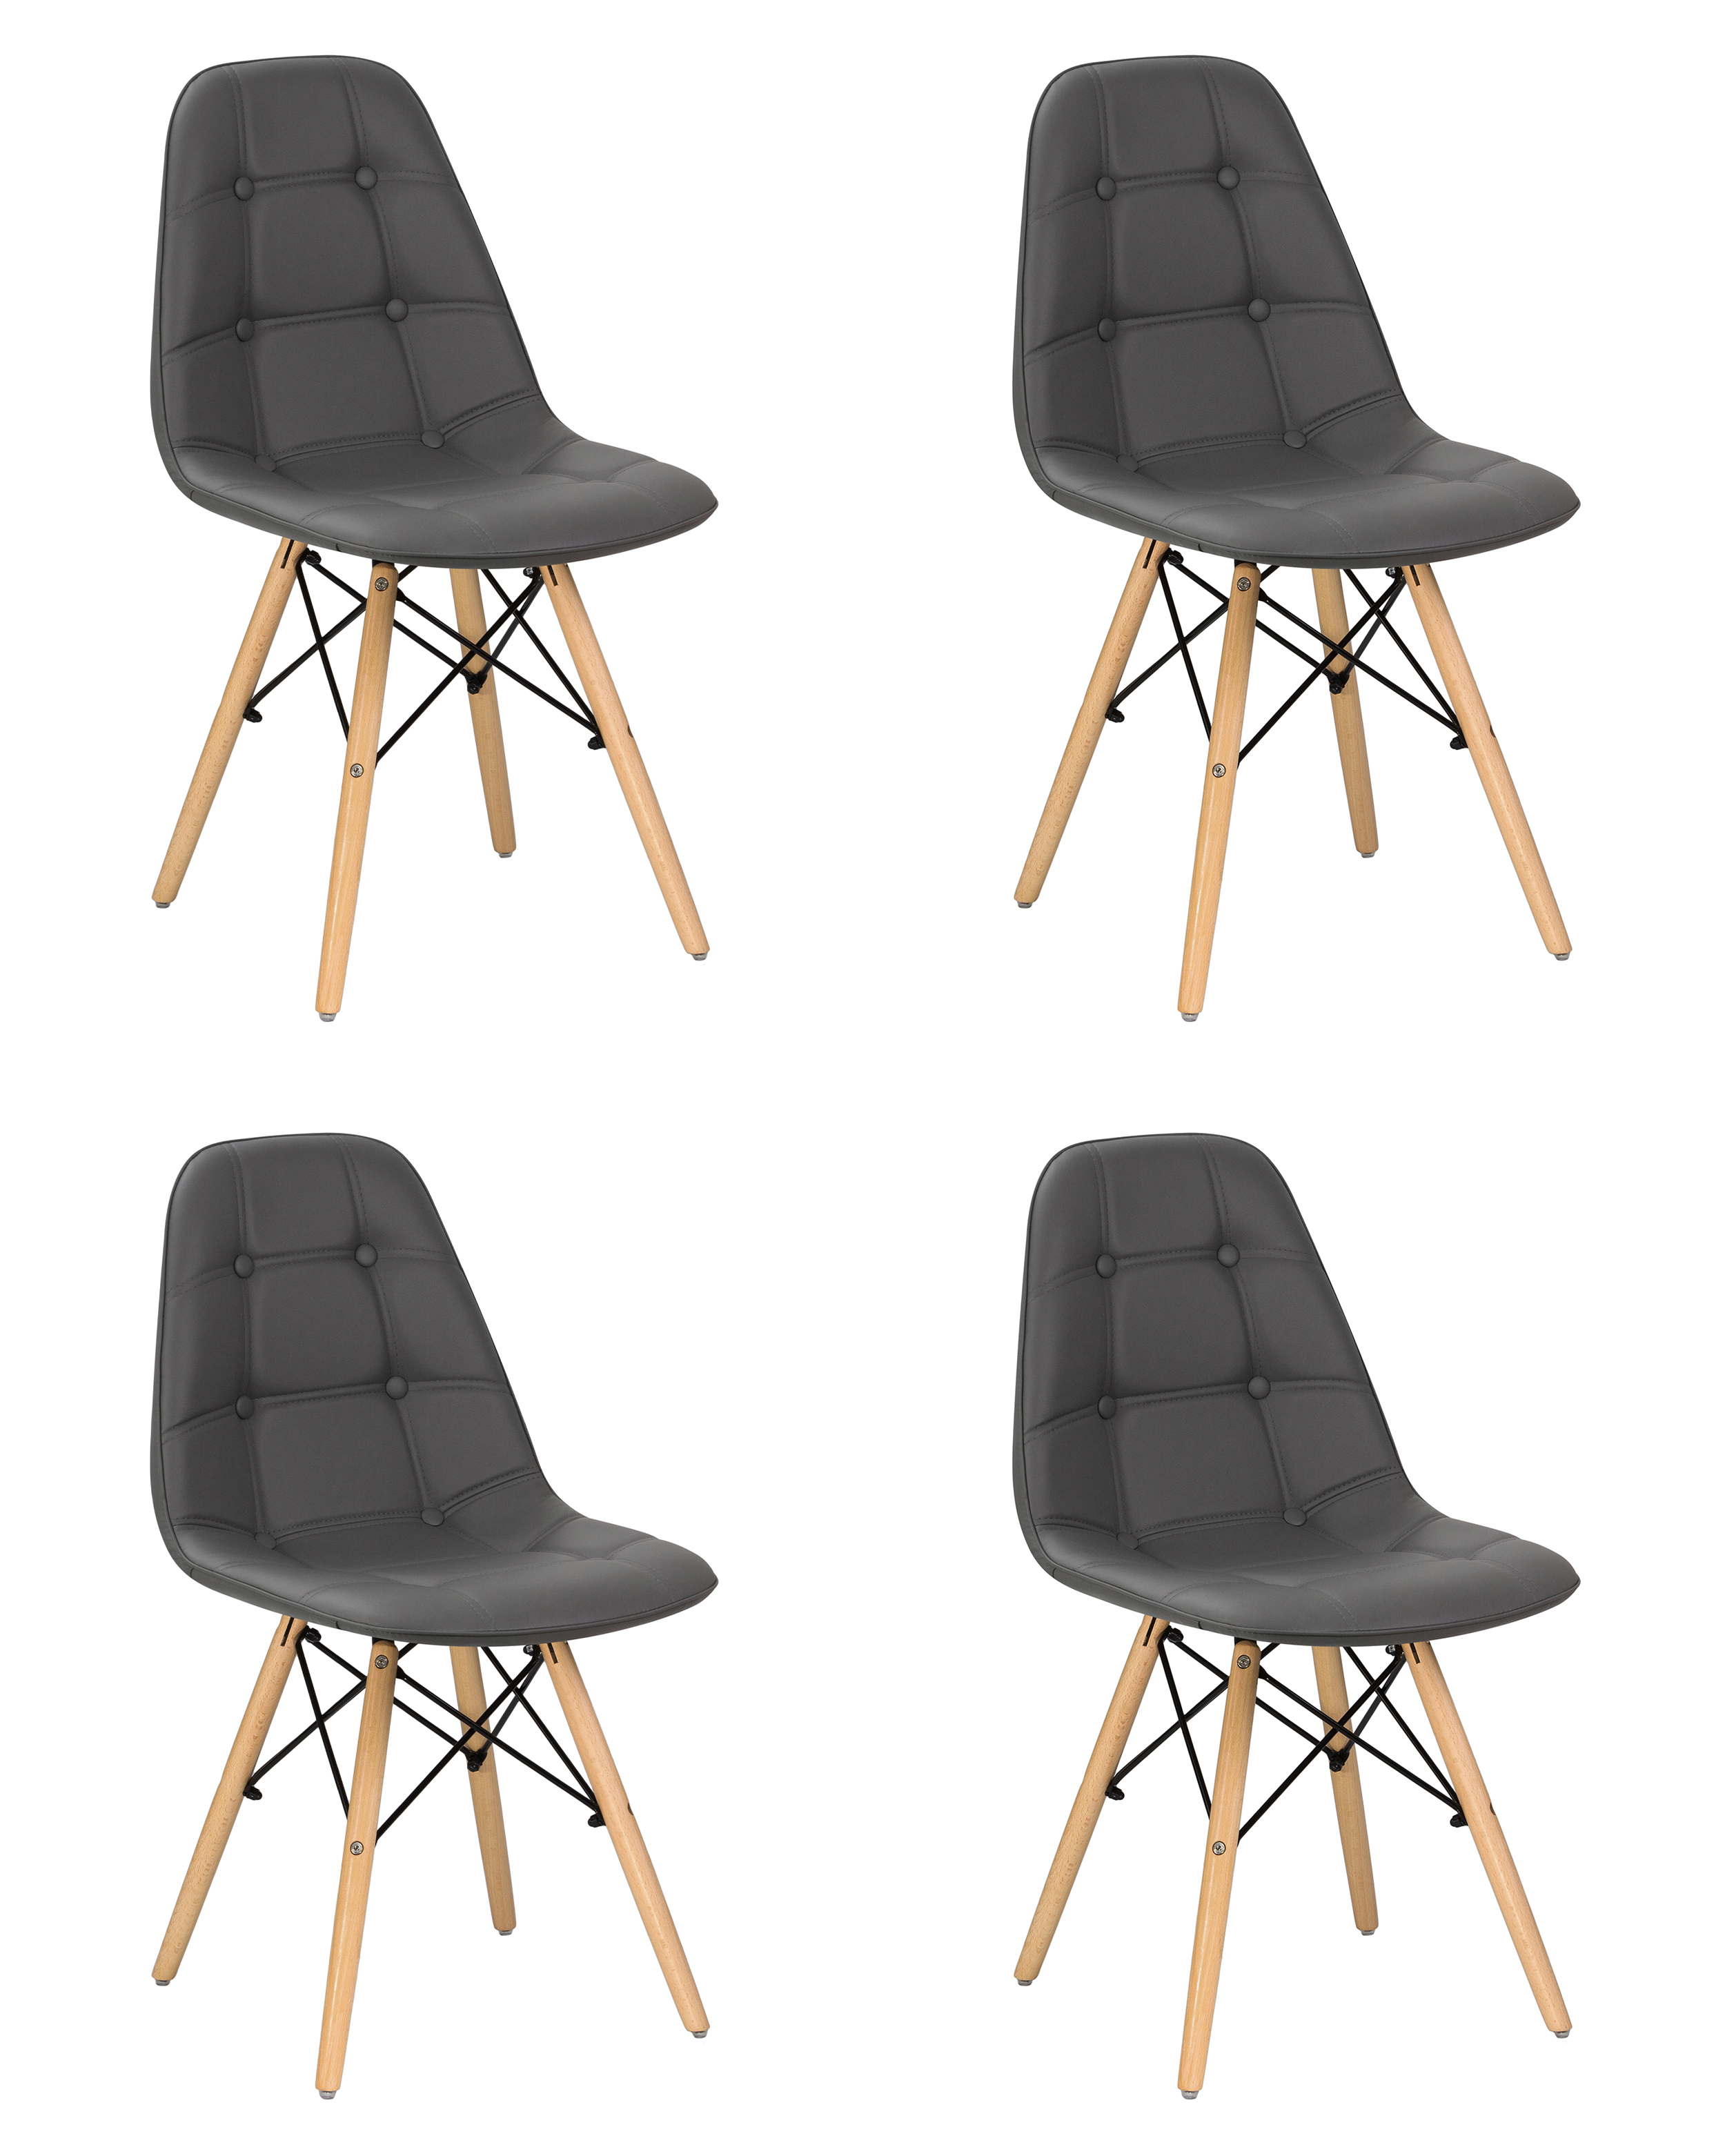 90560229 Комплект кухонных стульев 4 шт Bennet -301 83х54х44.5 см экокожа цвет серый LMZL STLM-0282679 DOBRIN